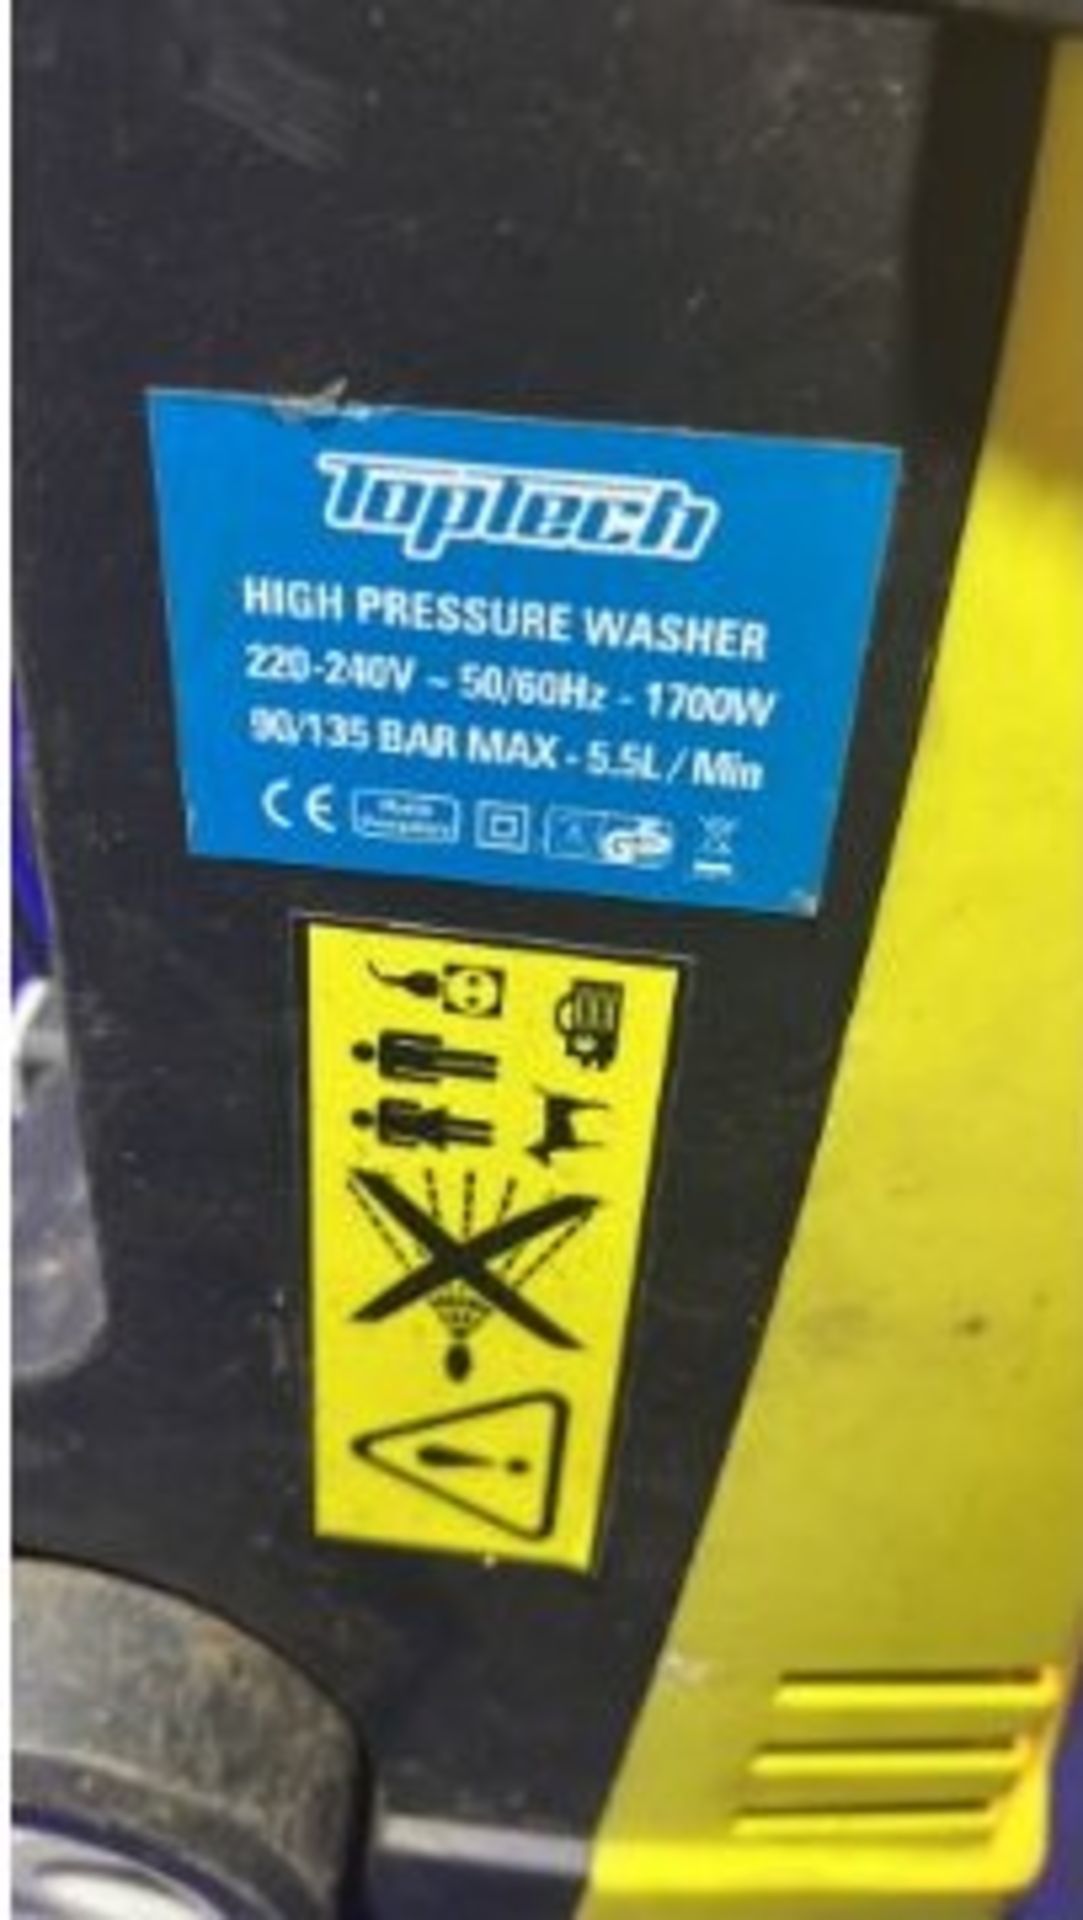 Toptech High Pressure Washer - Bild 2 aus 3